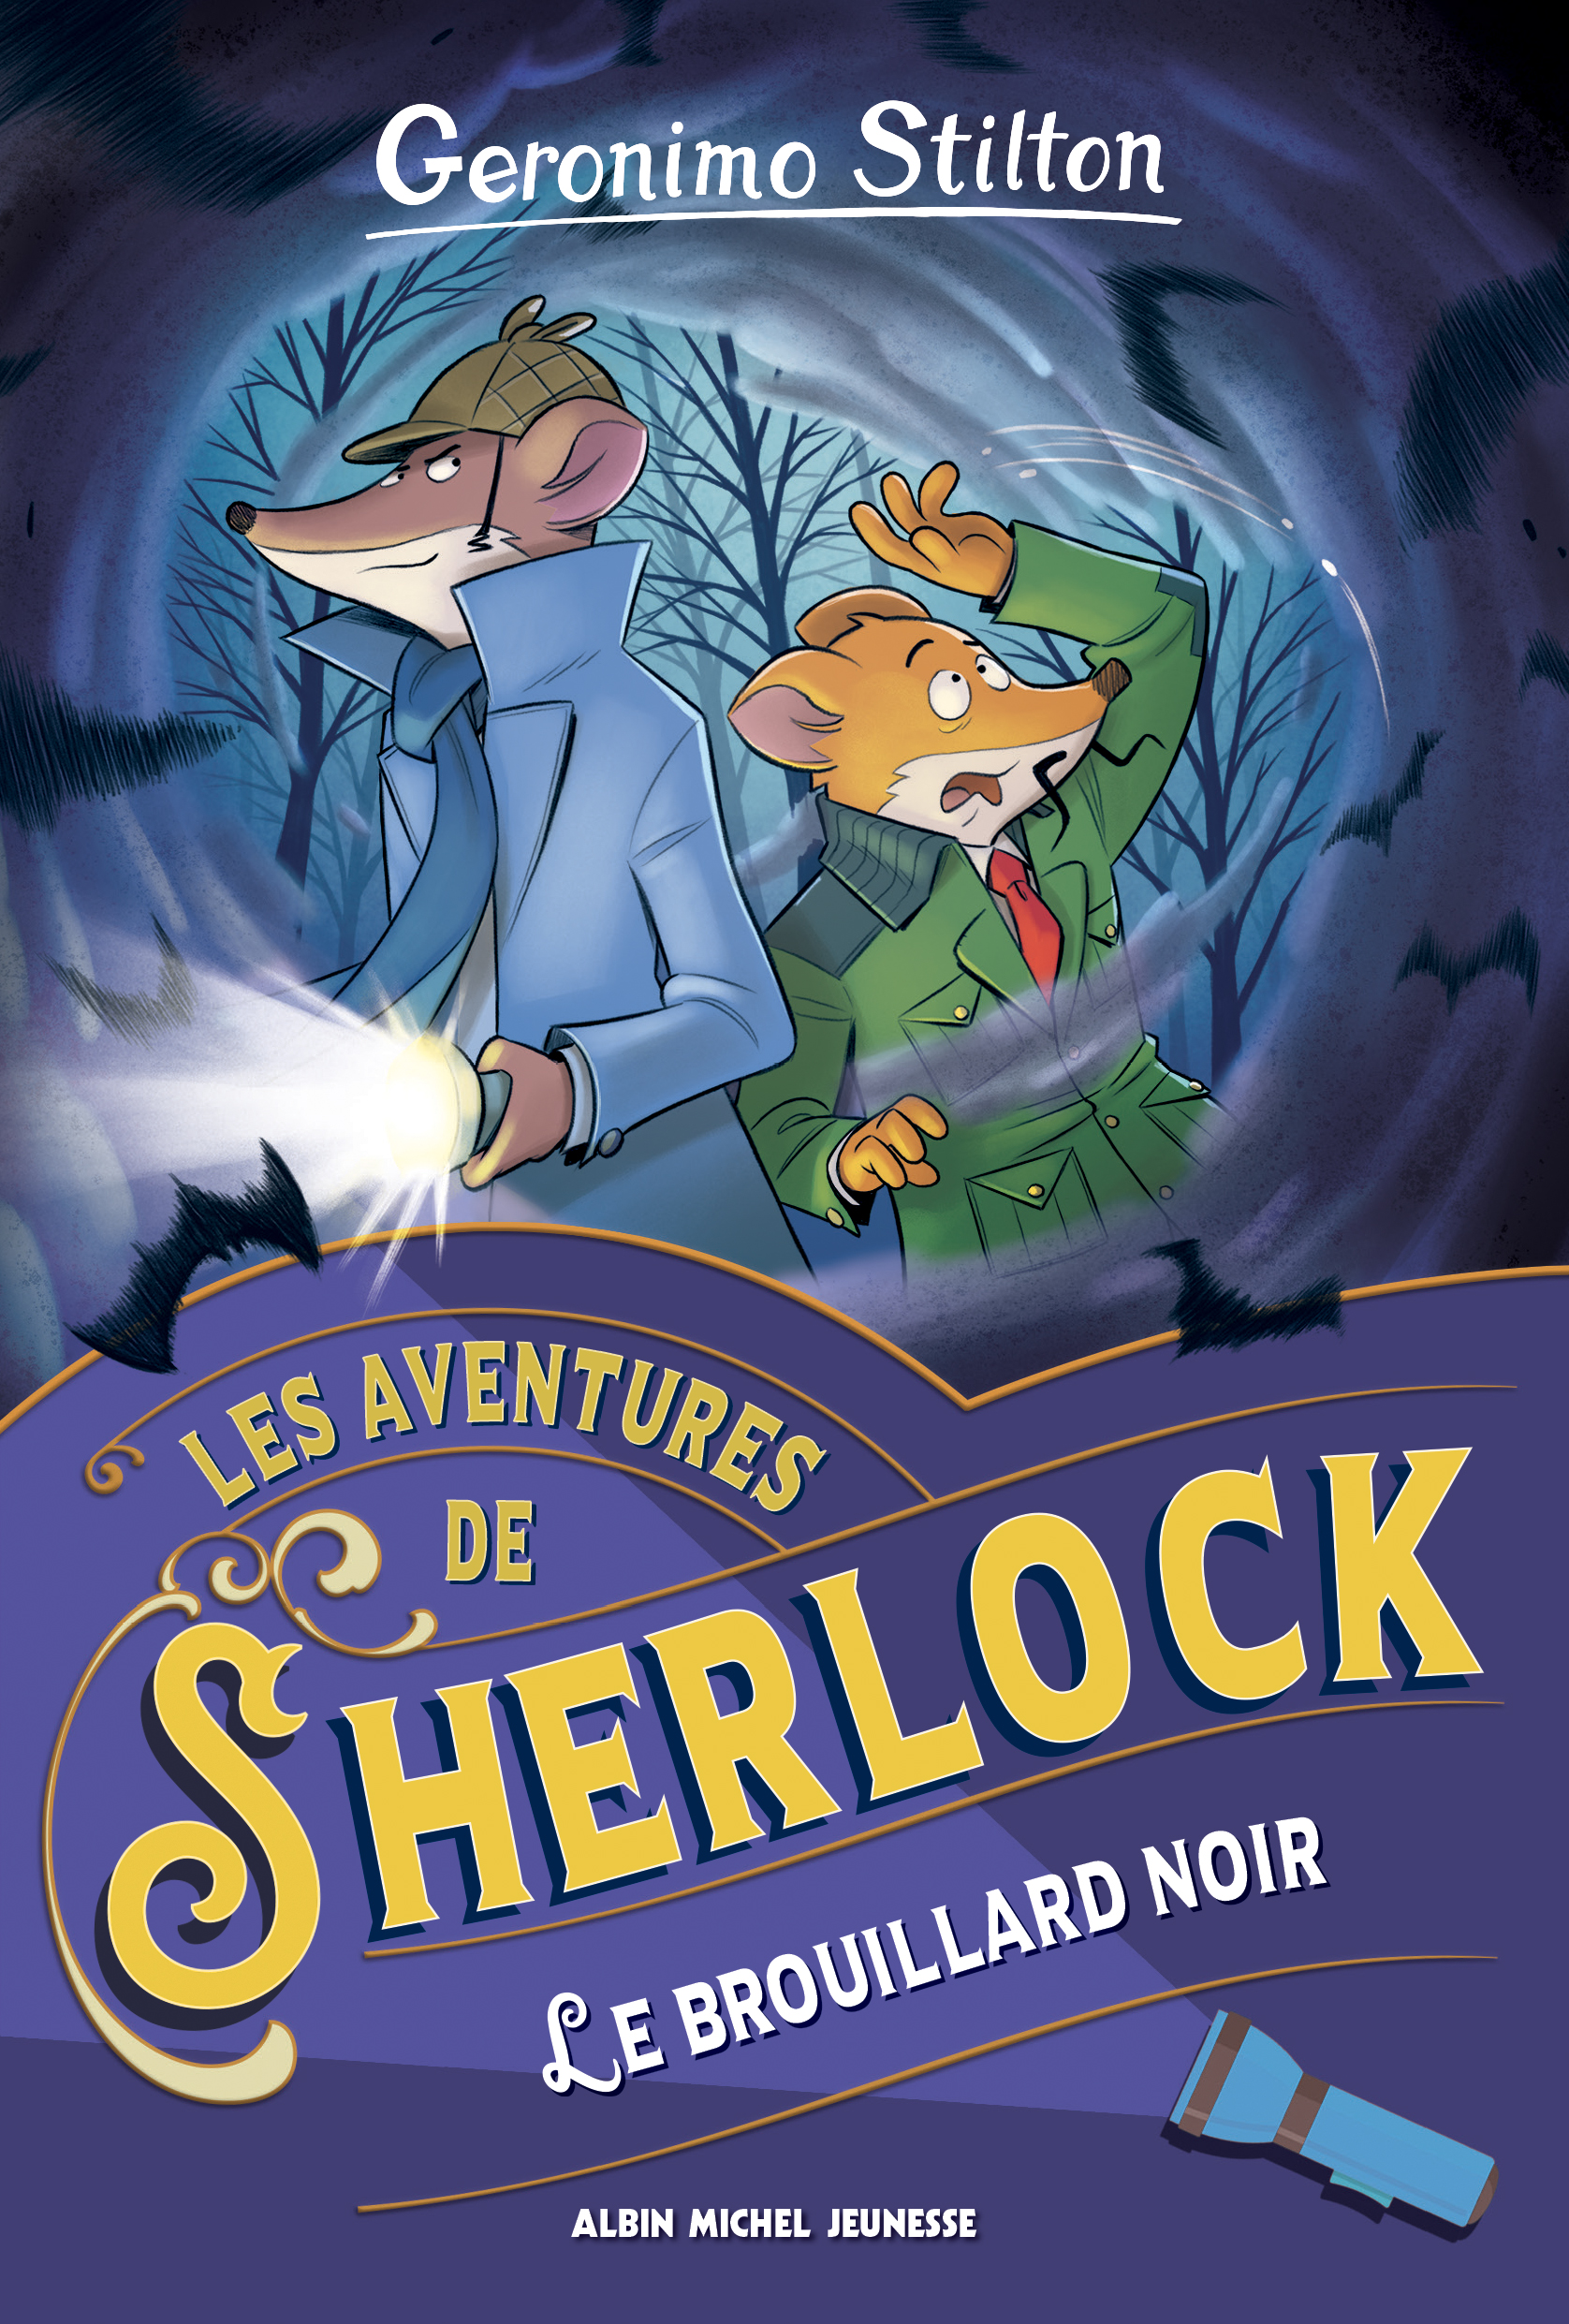 Couverture du livre Les Aventures de Sherlock - tome 2 - Le Brouillard noir